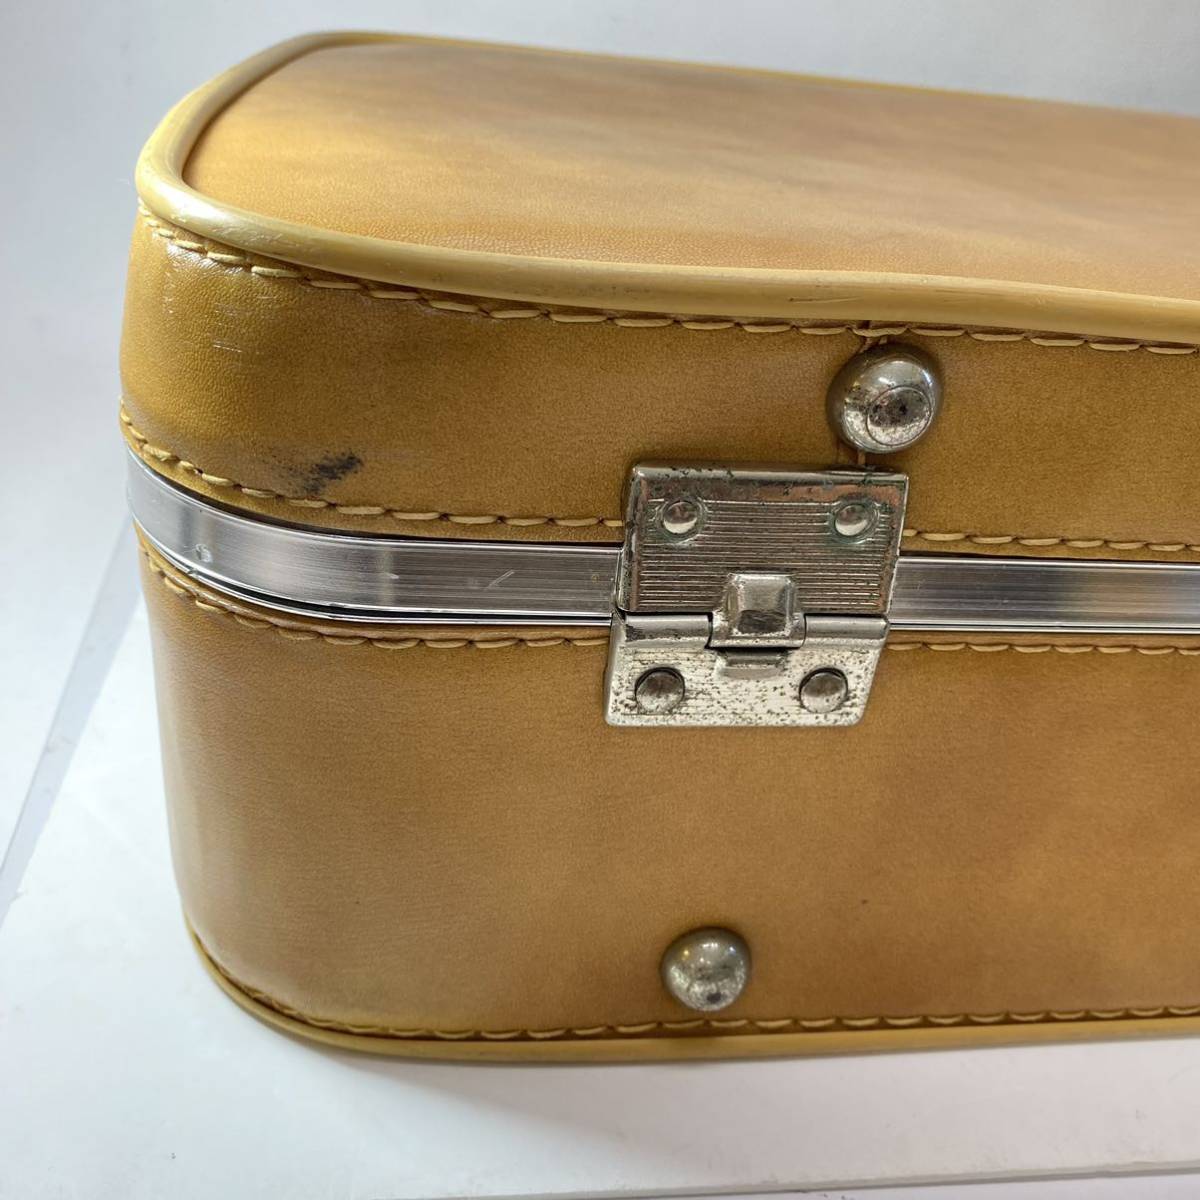 レザー トランク バッグ ベージュ ブラウン 革製 鞄 旅行 レトロ 古道具_画像9